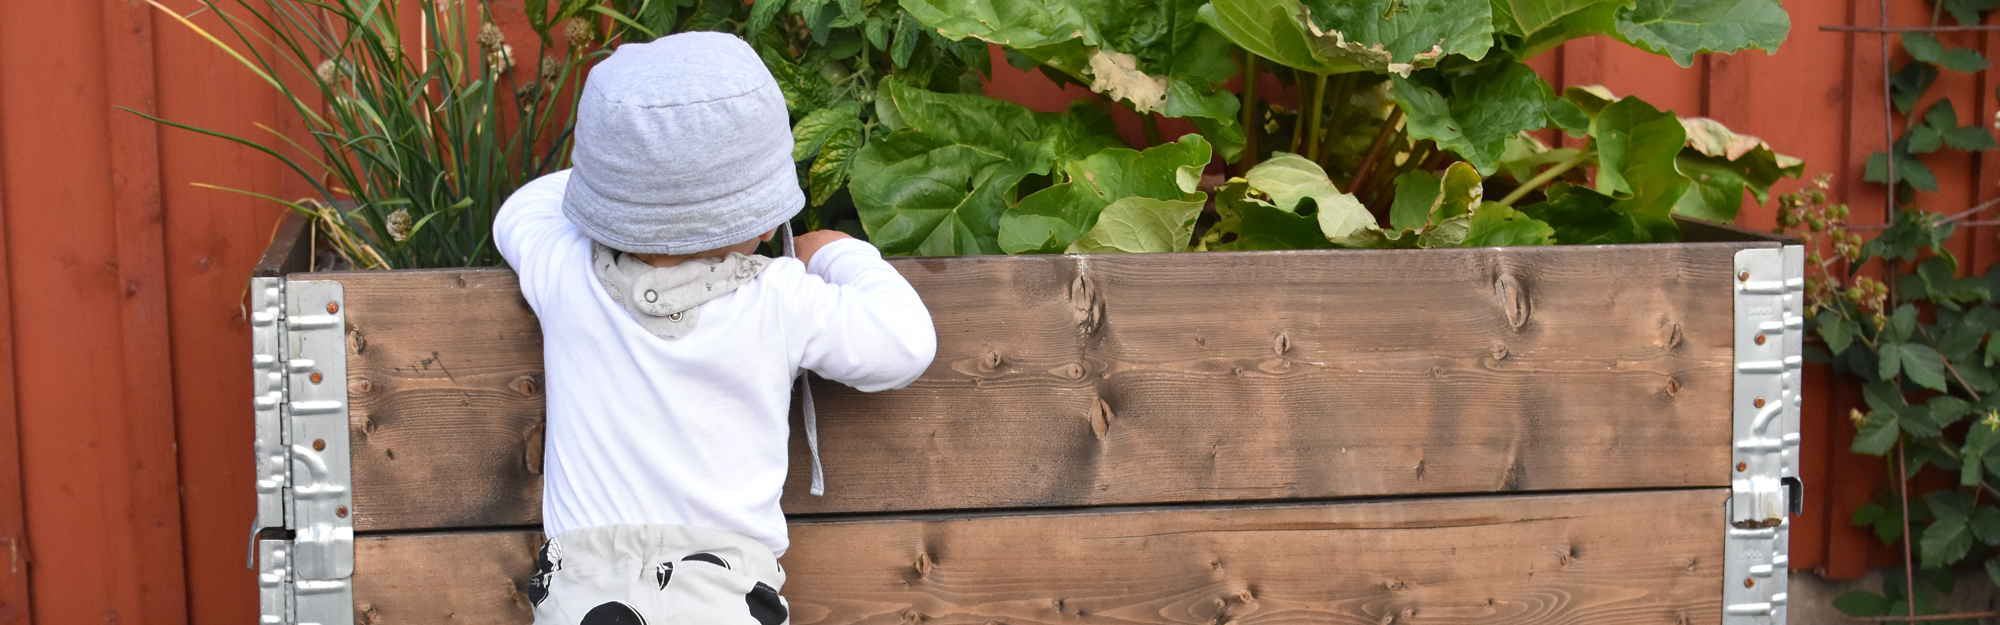 Bebis som hänger över en odlingslåda med rabarber och gräslök.